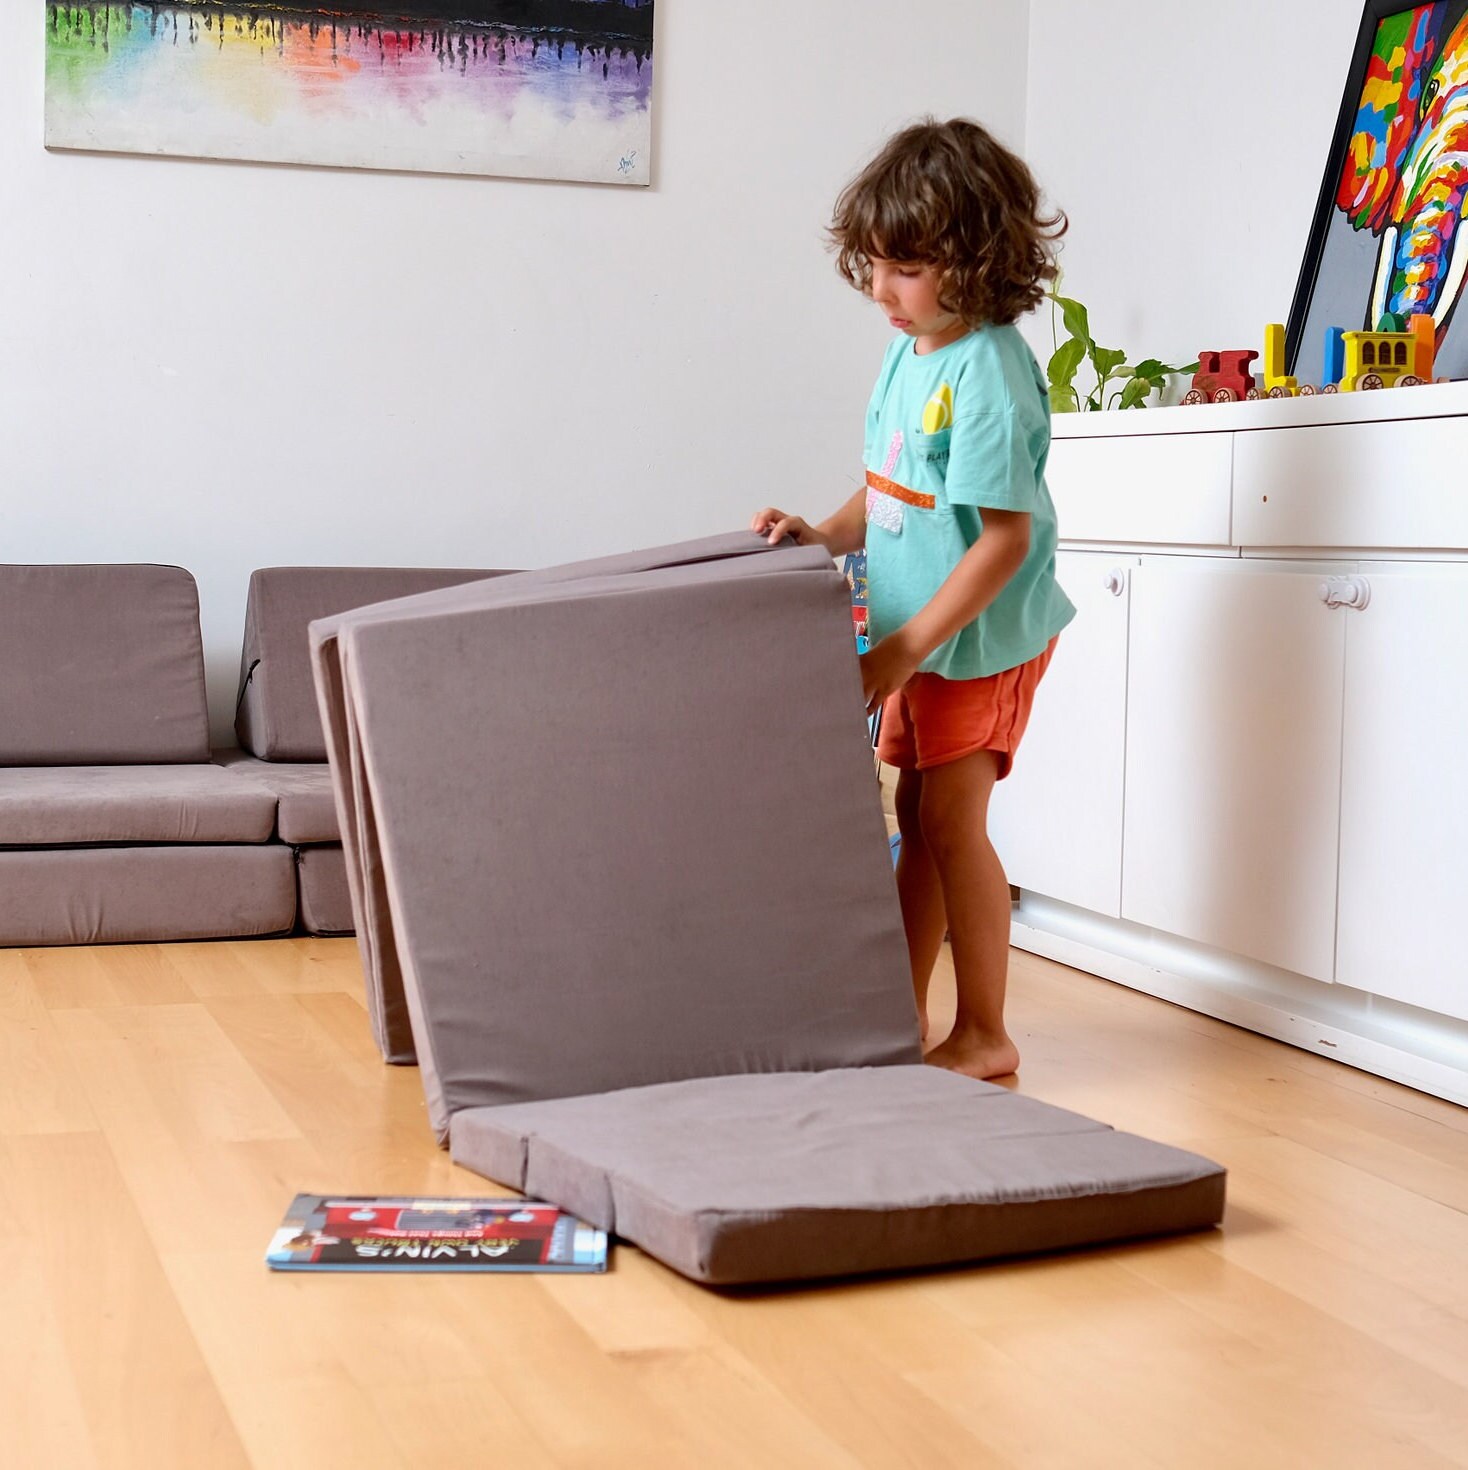 Sofá para niños, rincón de lectura, sofá perezoso para bebé, banco sentado  en el suelo, Mini sofá pequeño y bonito para bebé